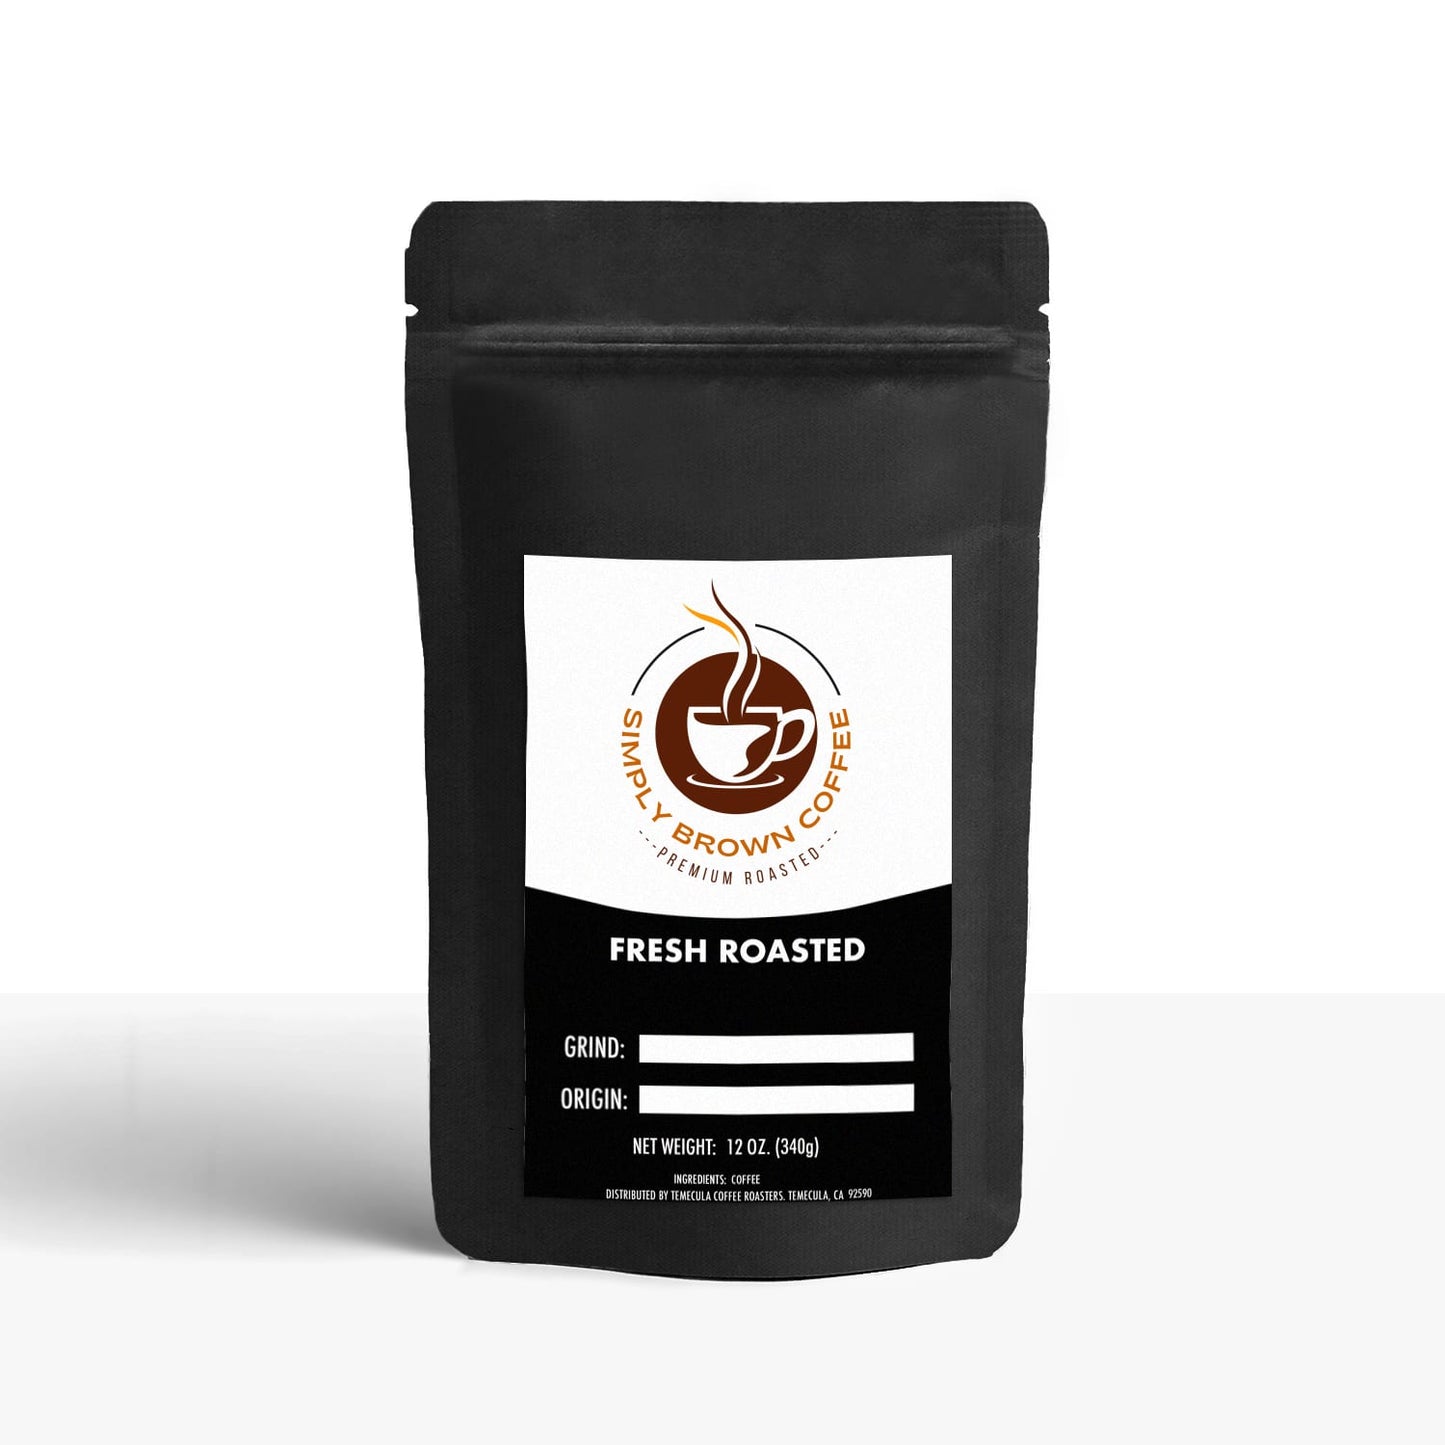 12 Pack Single Serve Coffee Capsules "Brownies" - Simply Brown Coffee